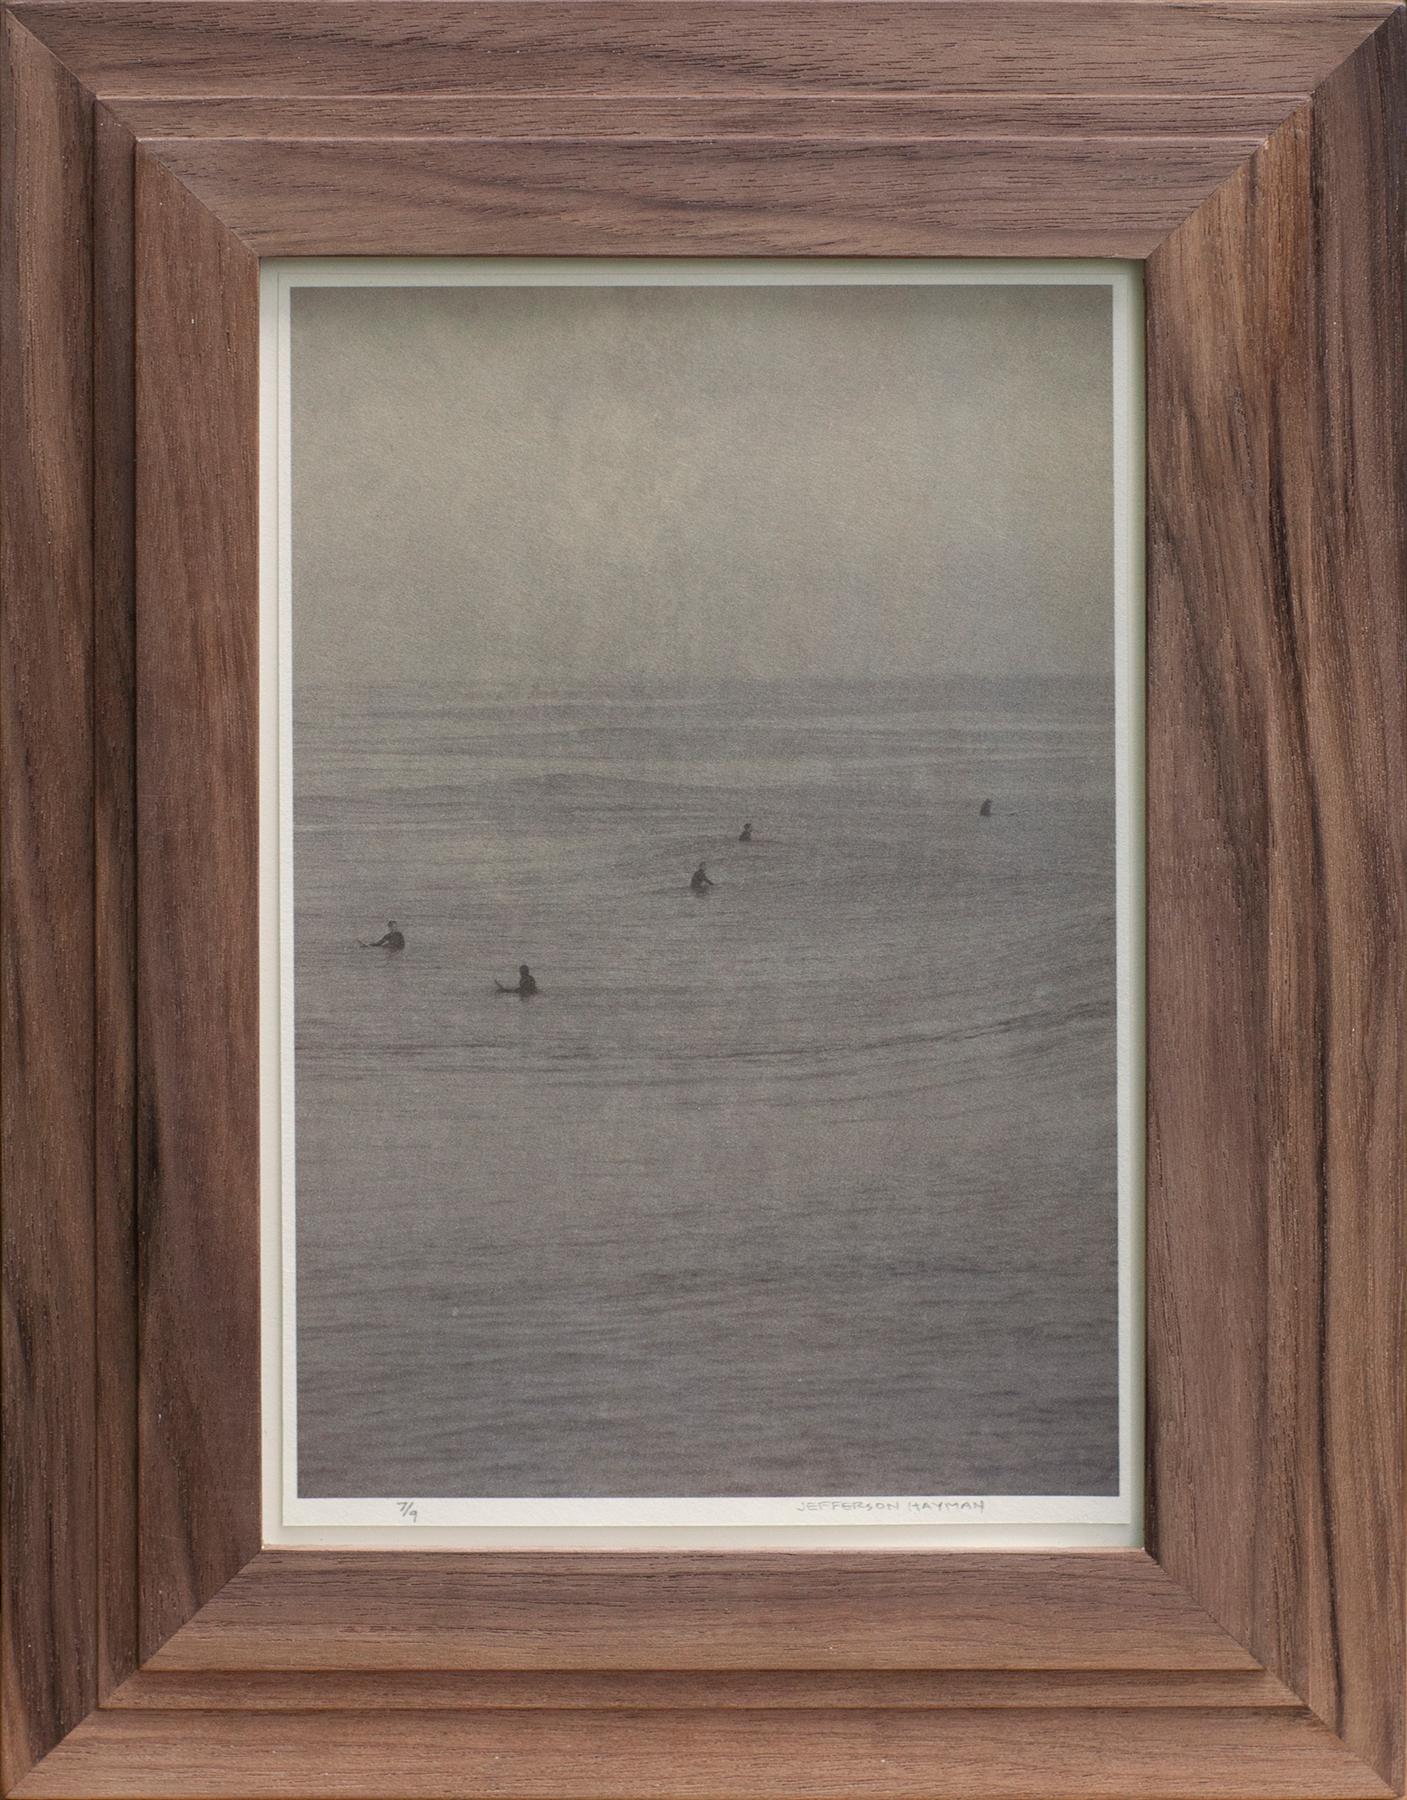 Jefferson Hayman Landscape Photograph - FIve Surfers